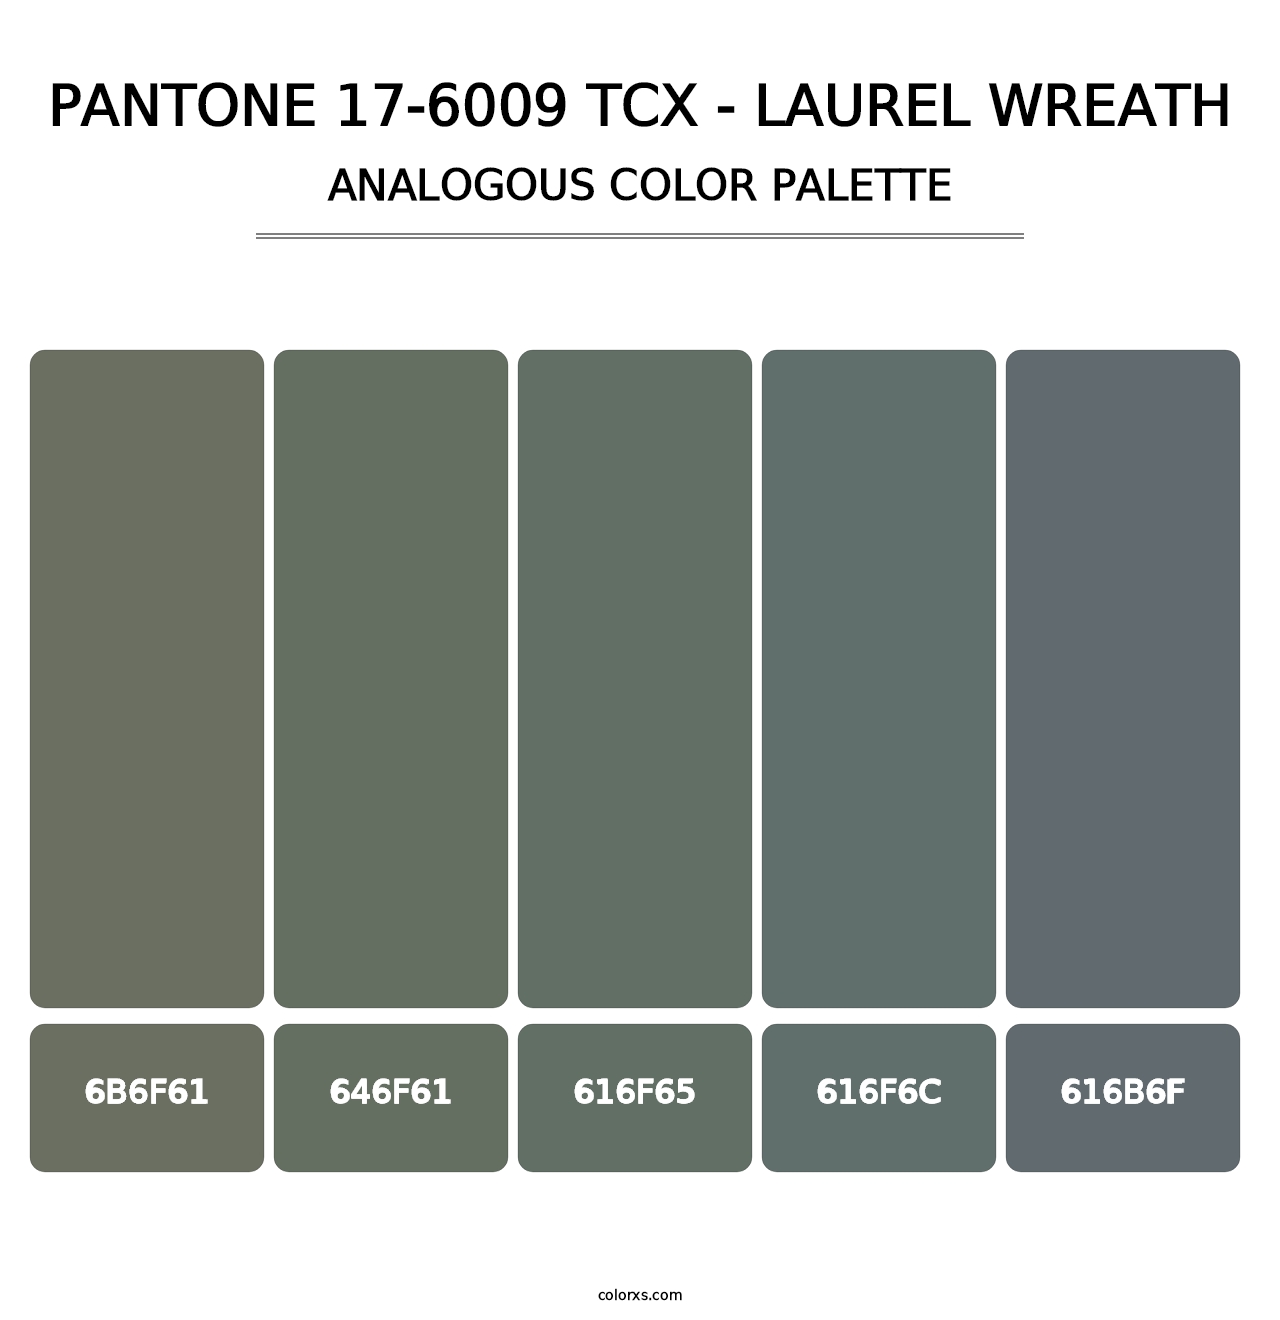 PANTONE 17-6009 TCX - Laurel Wreath - Analogous Color Palette